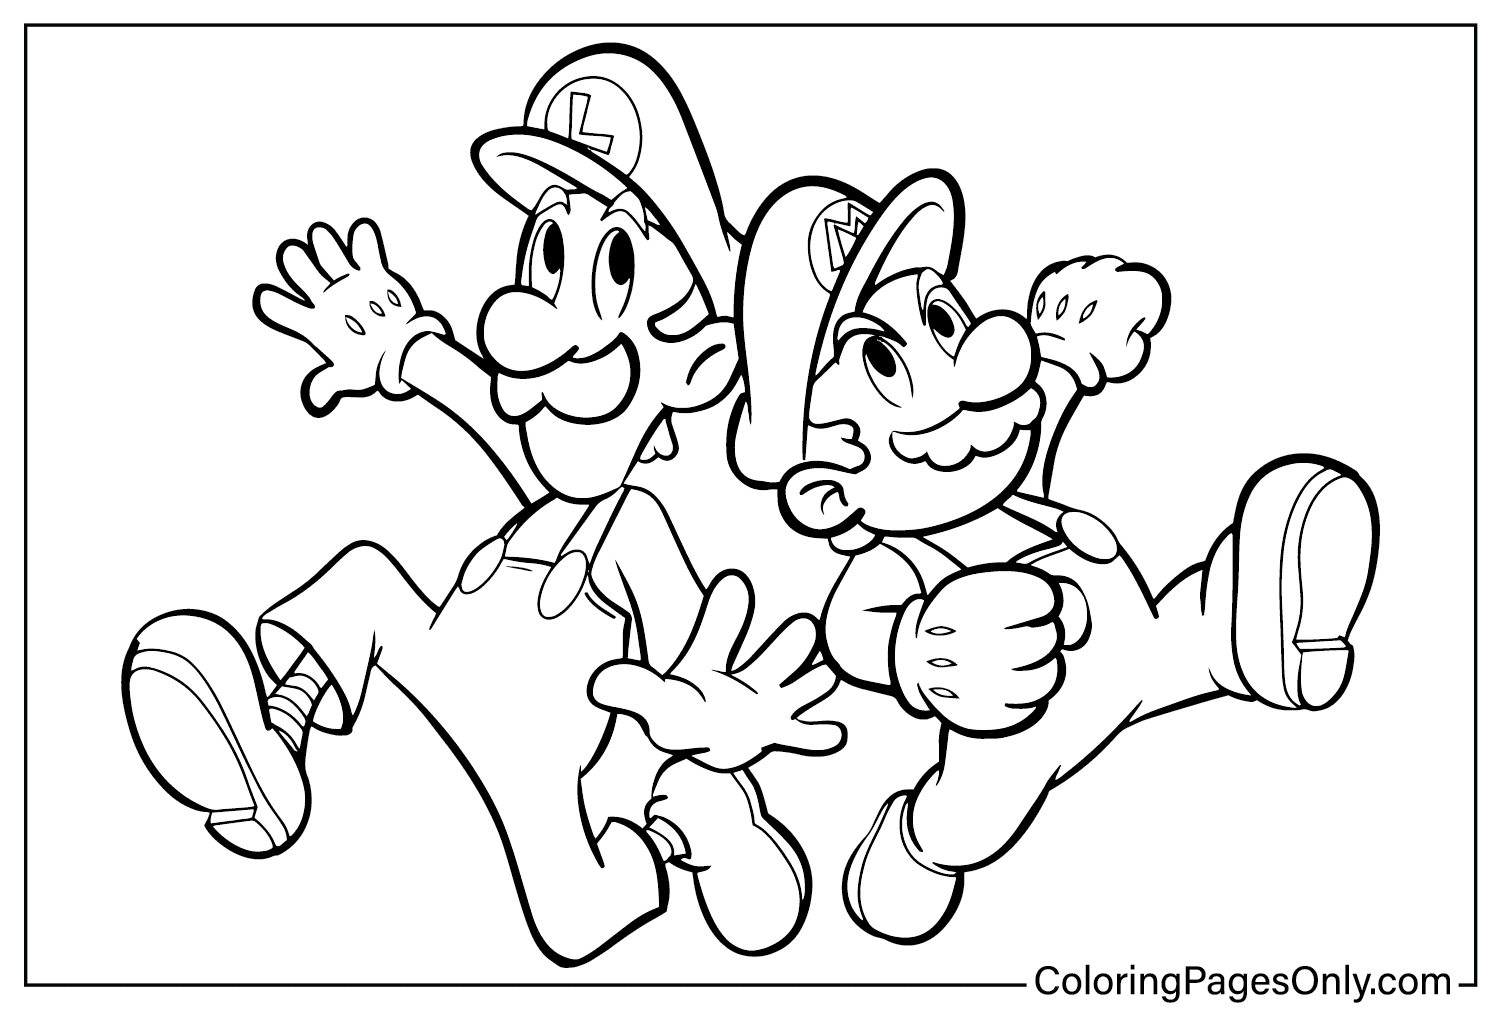 Pagina da colorare Mario e Luigi del film Super Mario Bros.